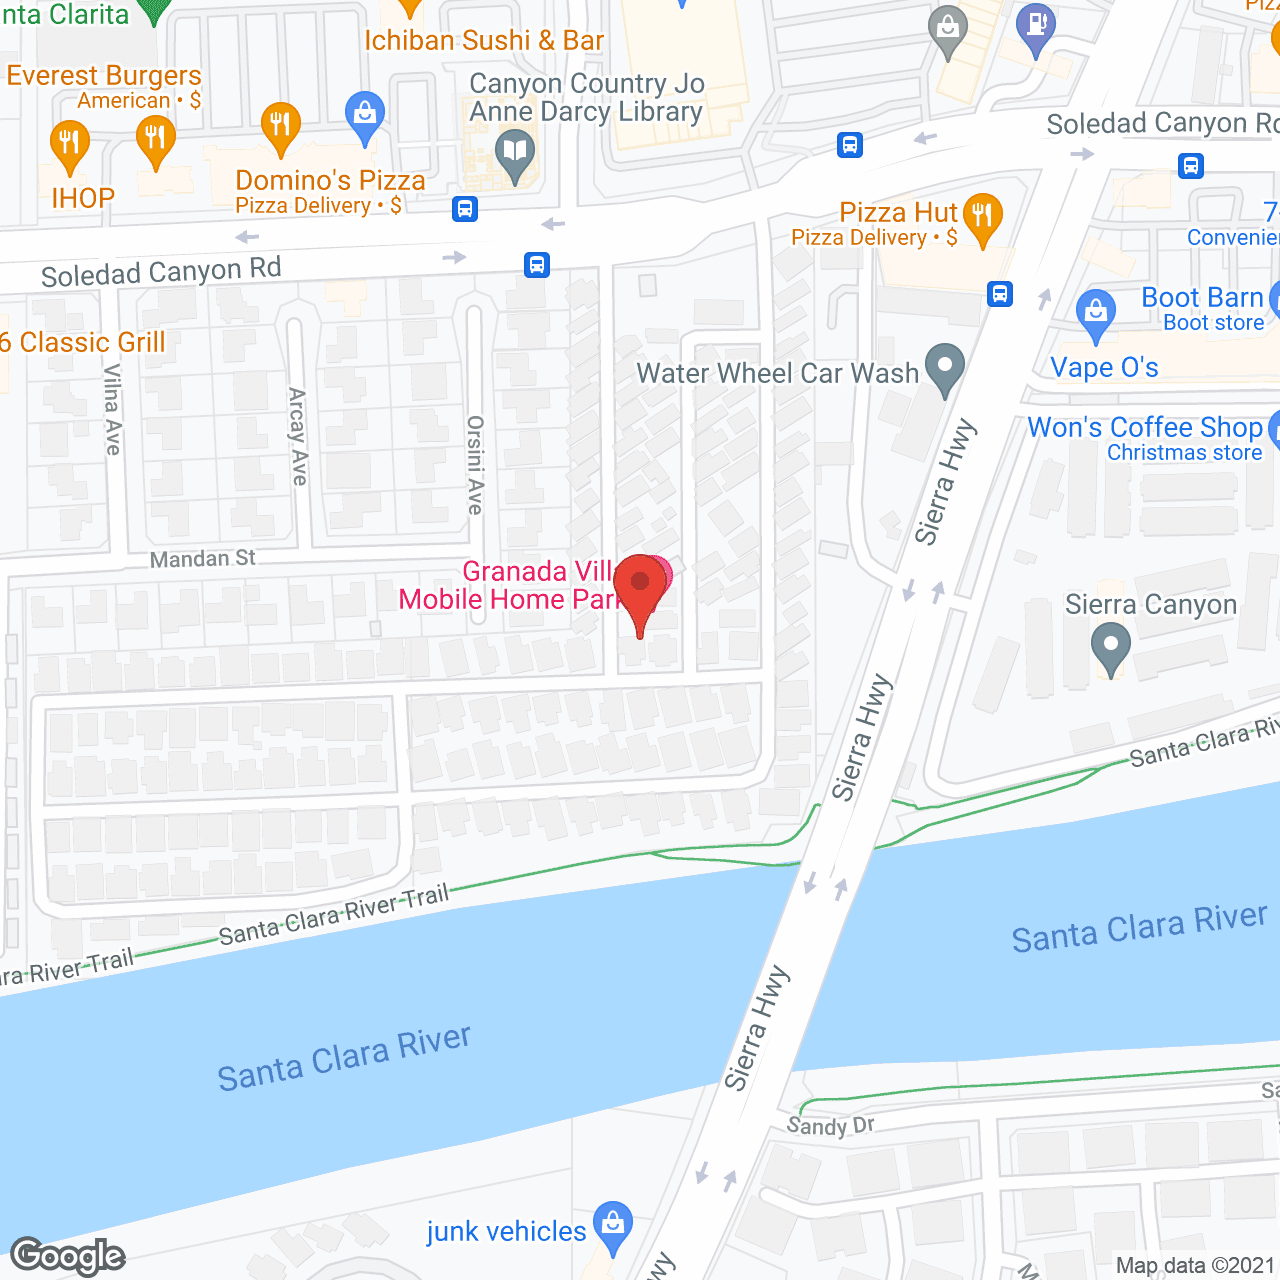 Granada Villa Mobile Home Park in google map